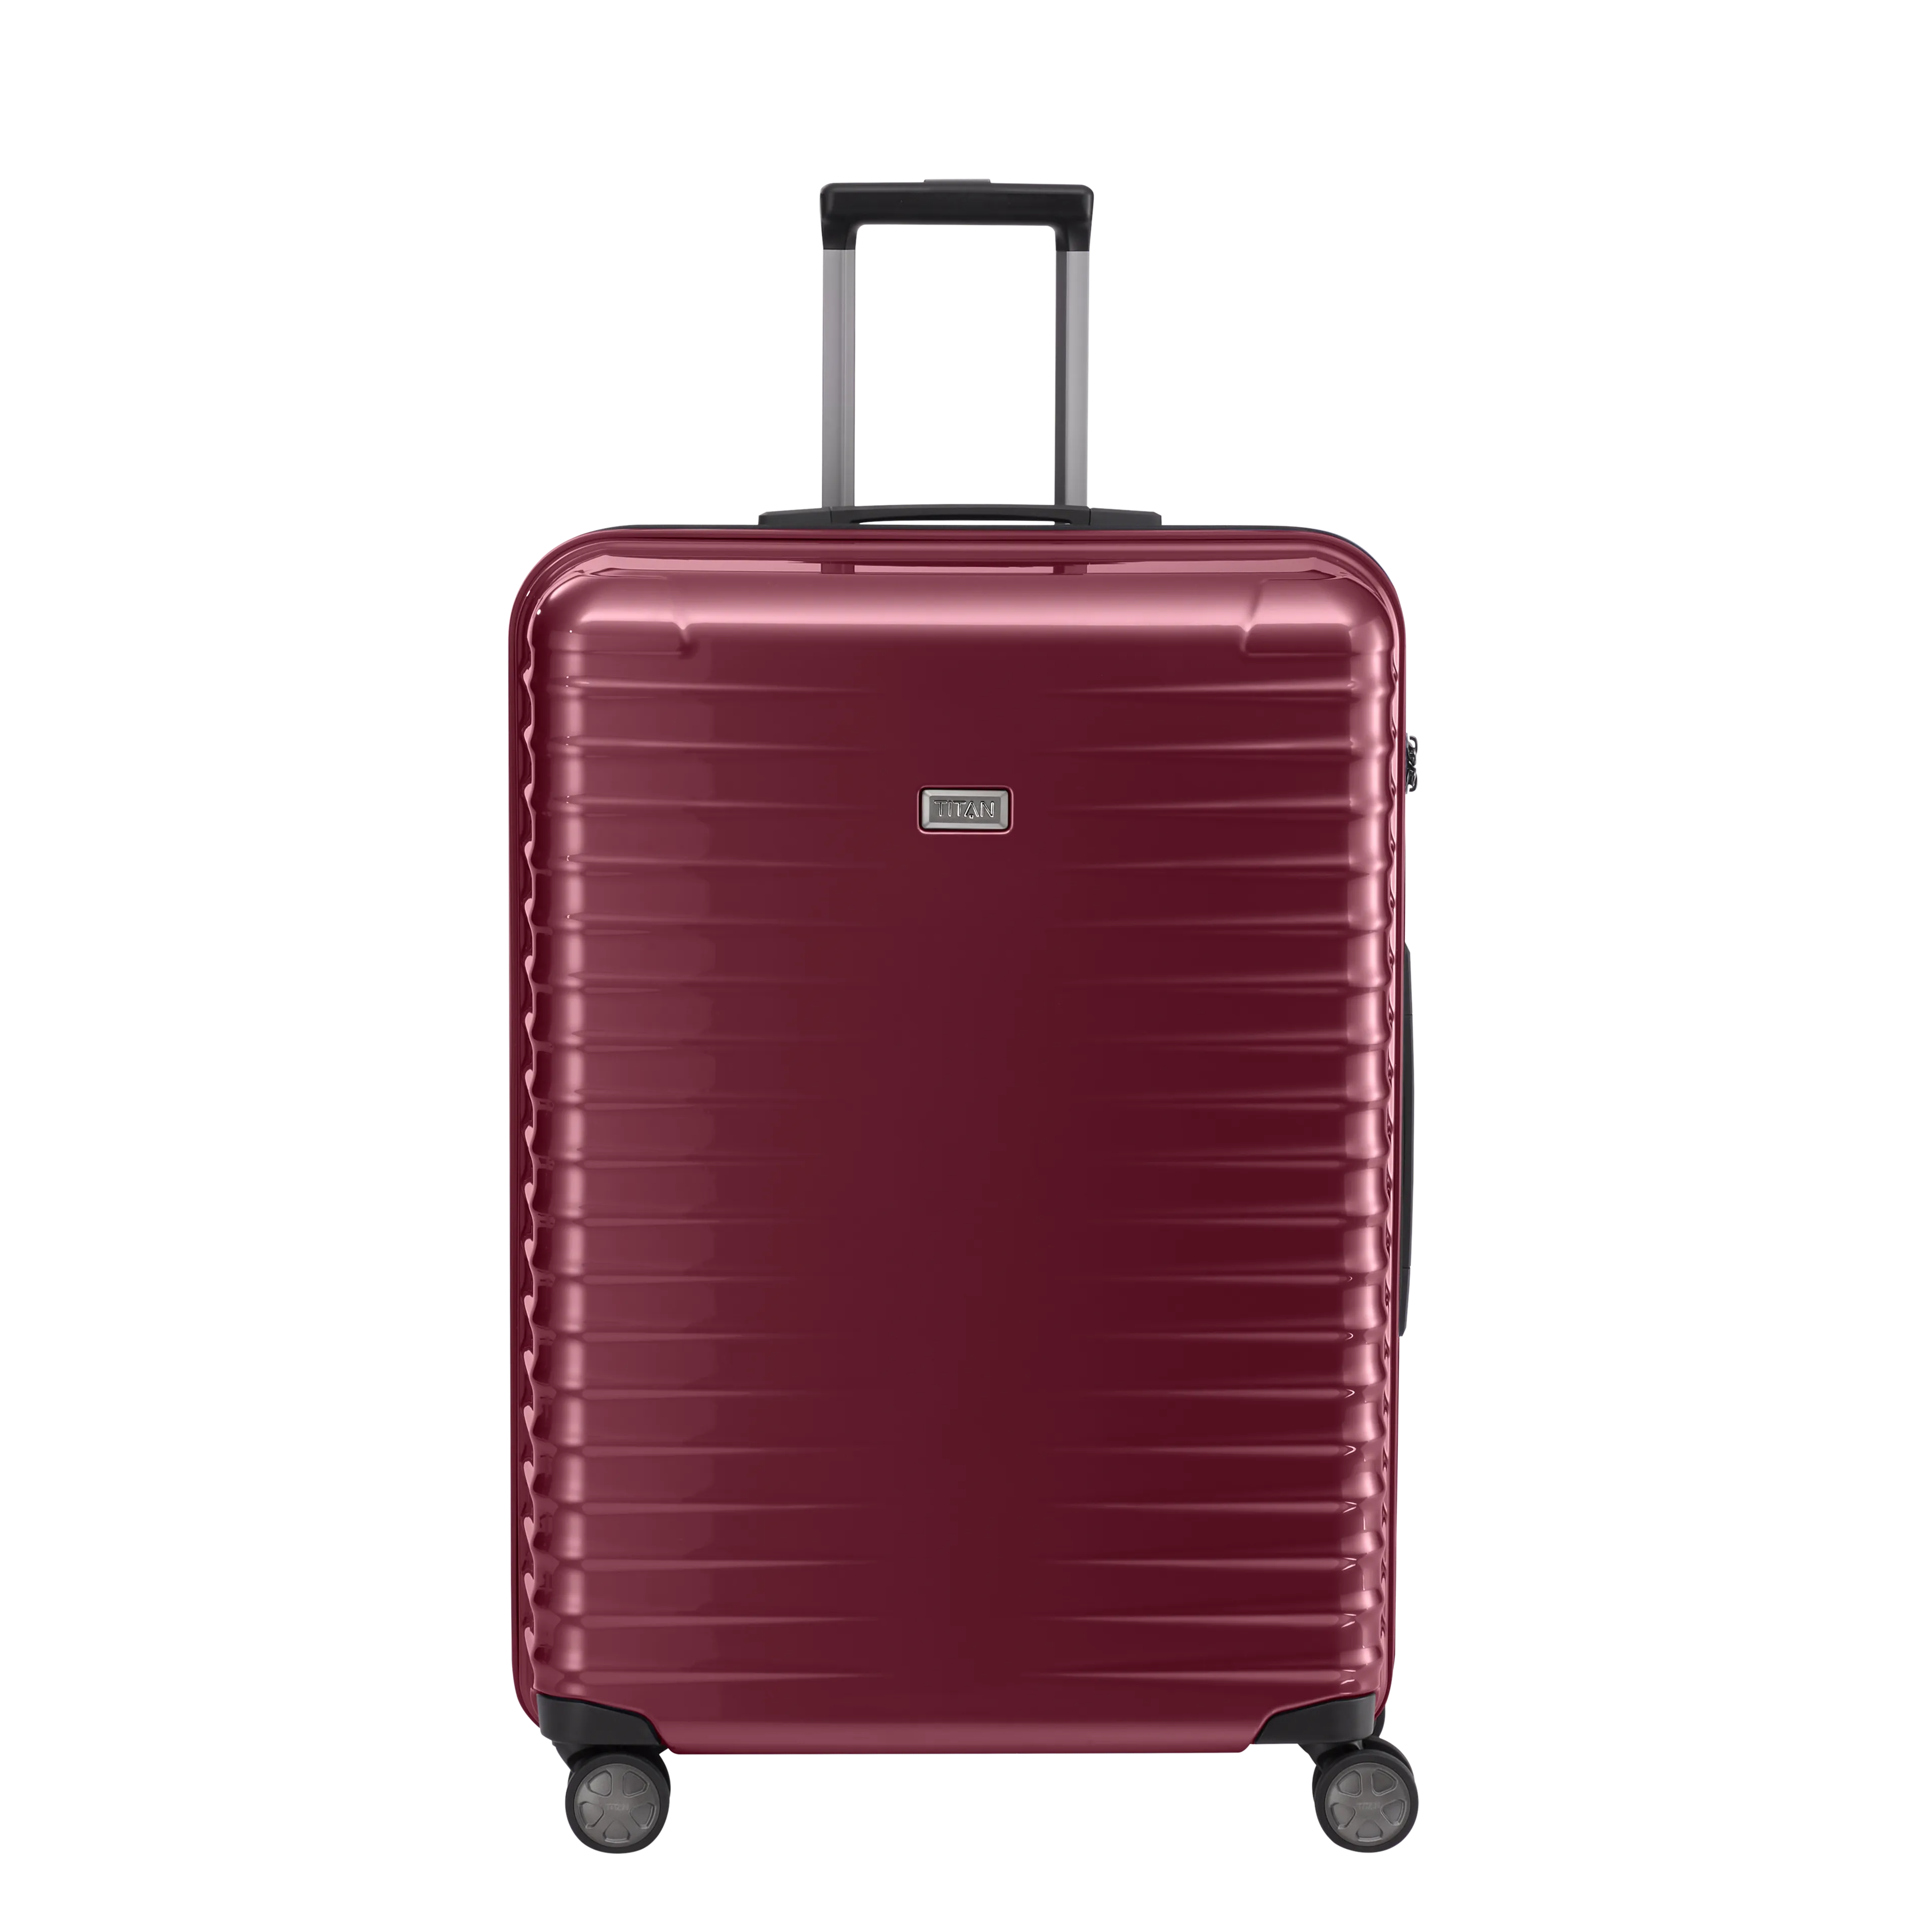 Ein TITAN Koffer der Serie LITRON Frontansicht in rot